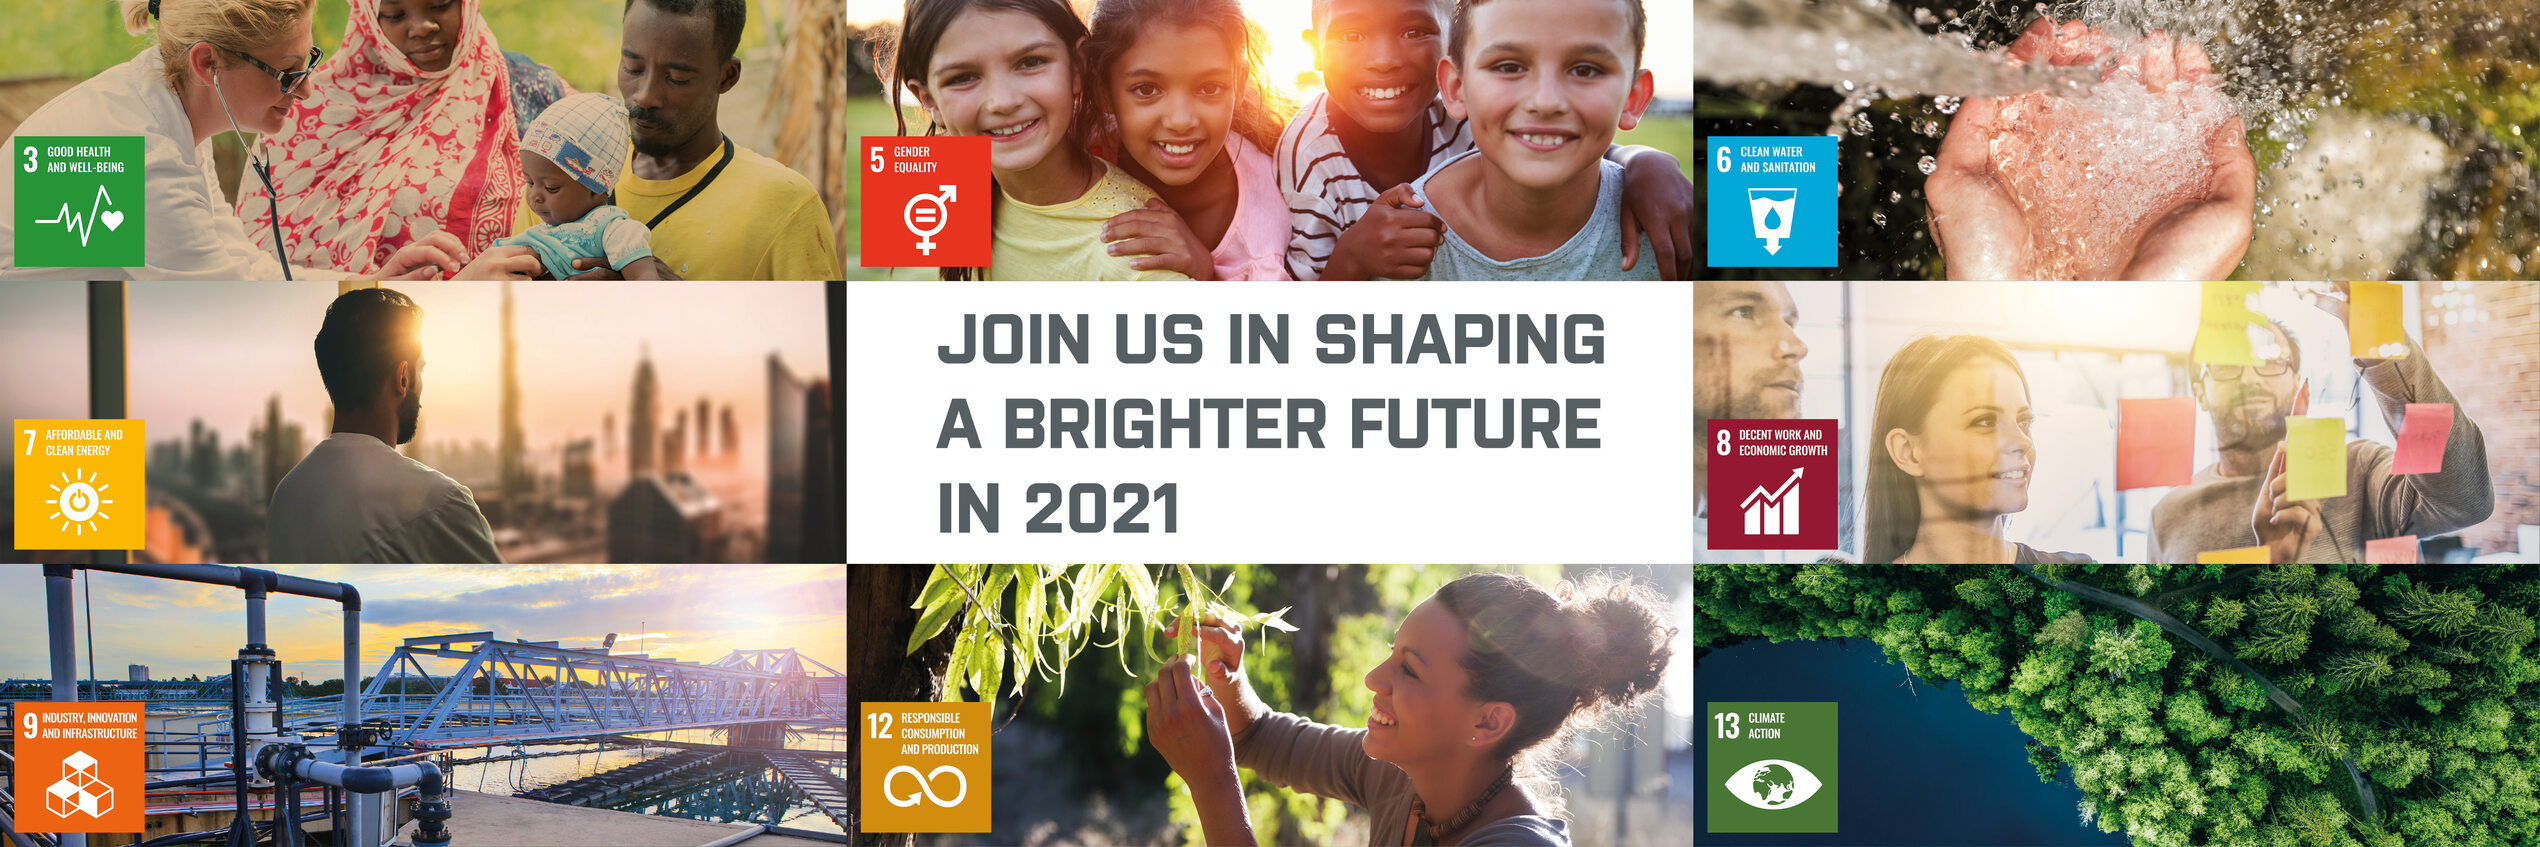 Dołącz do nas w kształtowaniu lepszej przyszłości w 2021 roku